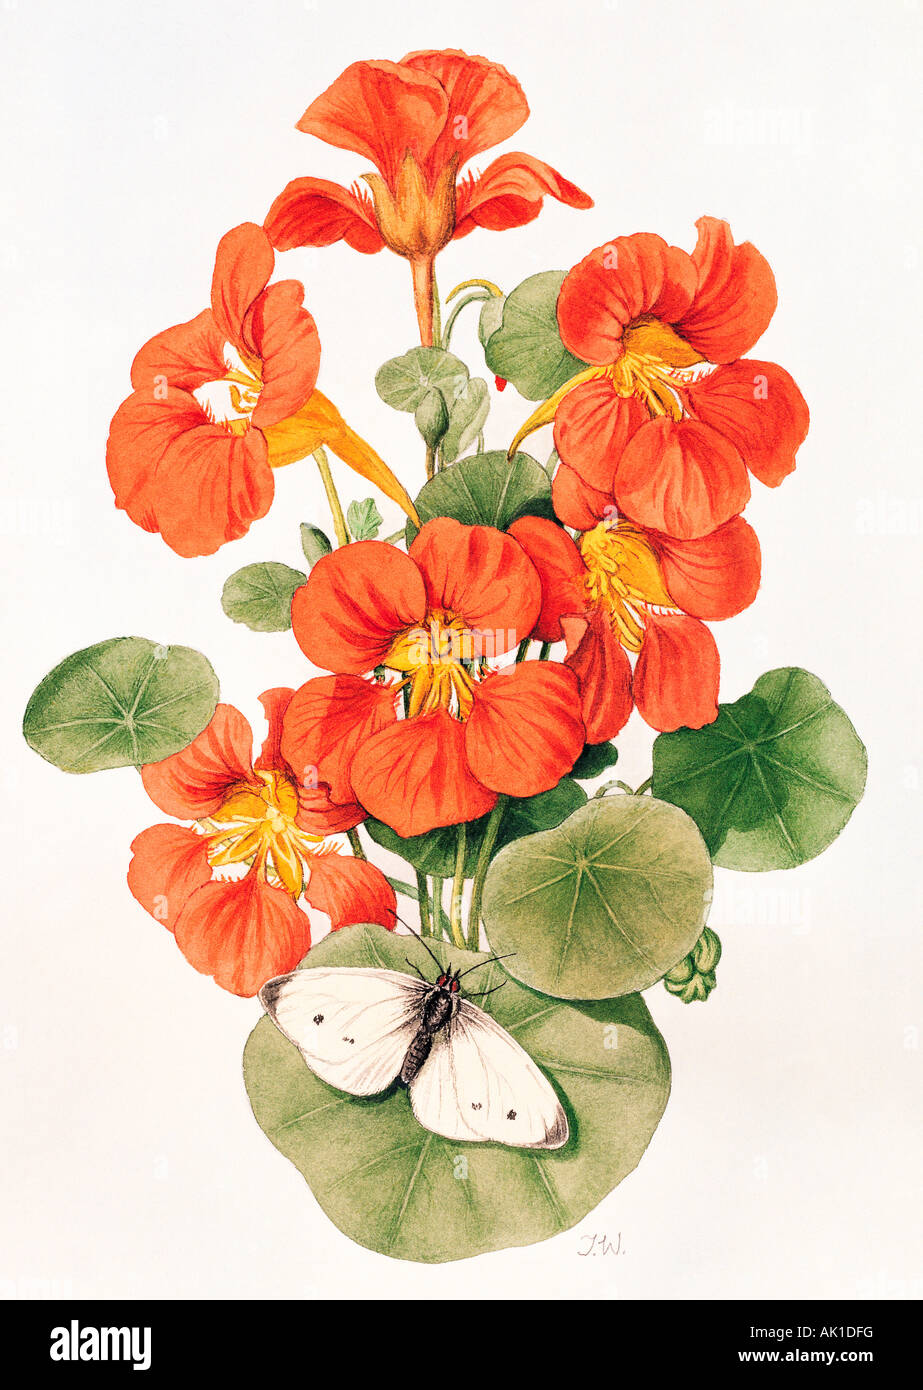 Illustration of Begonia flowers. Stock Photo